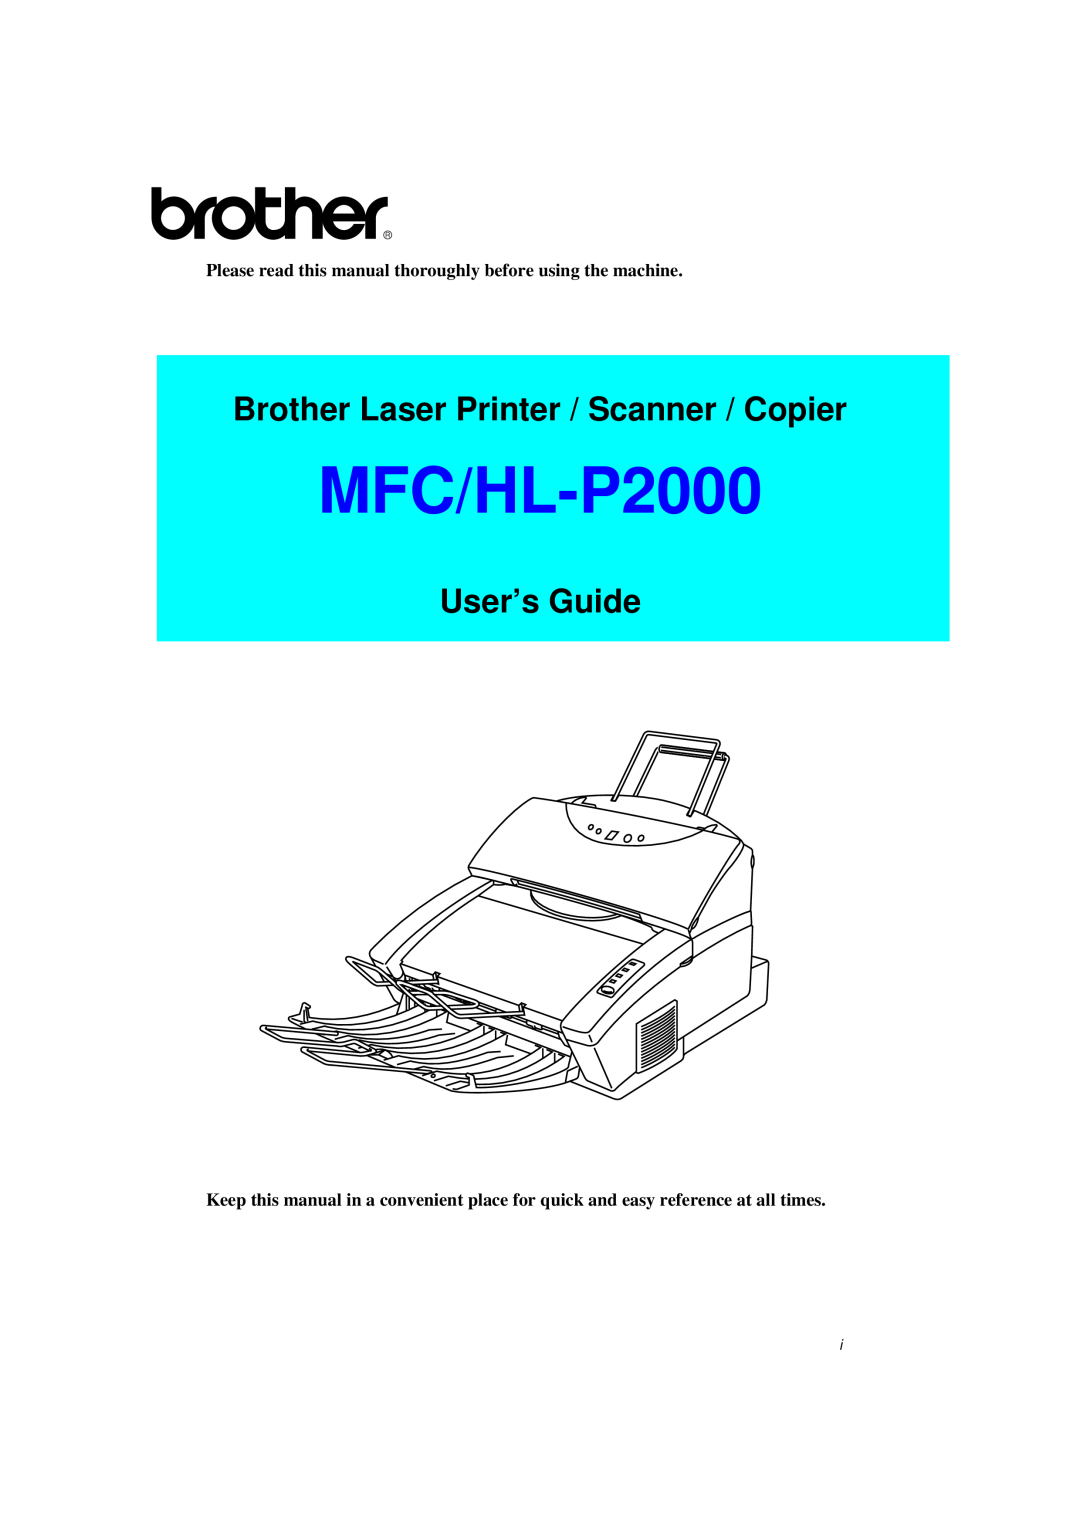 Brother MFC/HL-P2000 manual Brother Laser Printer / Scanner / Copier, User’s Guide 